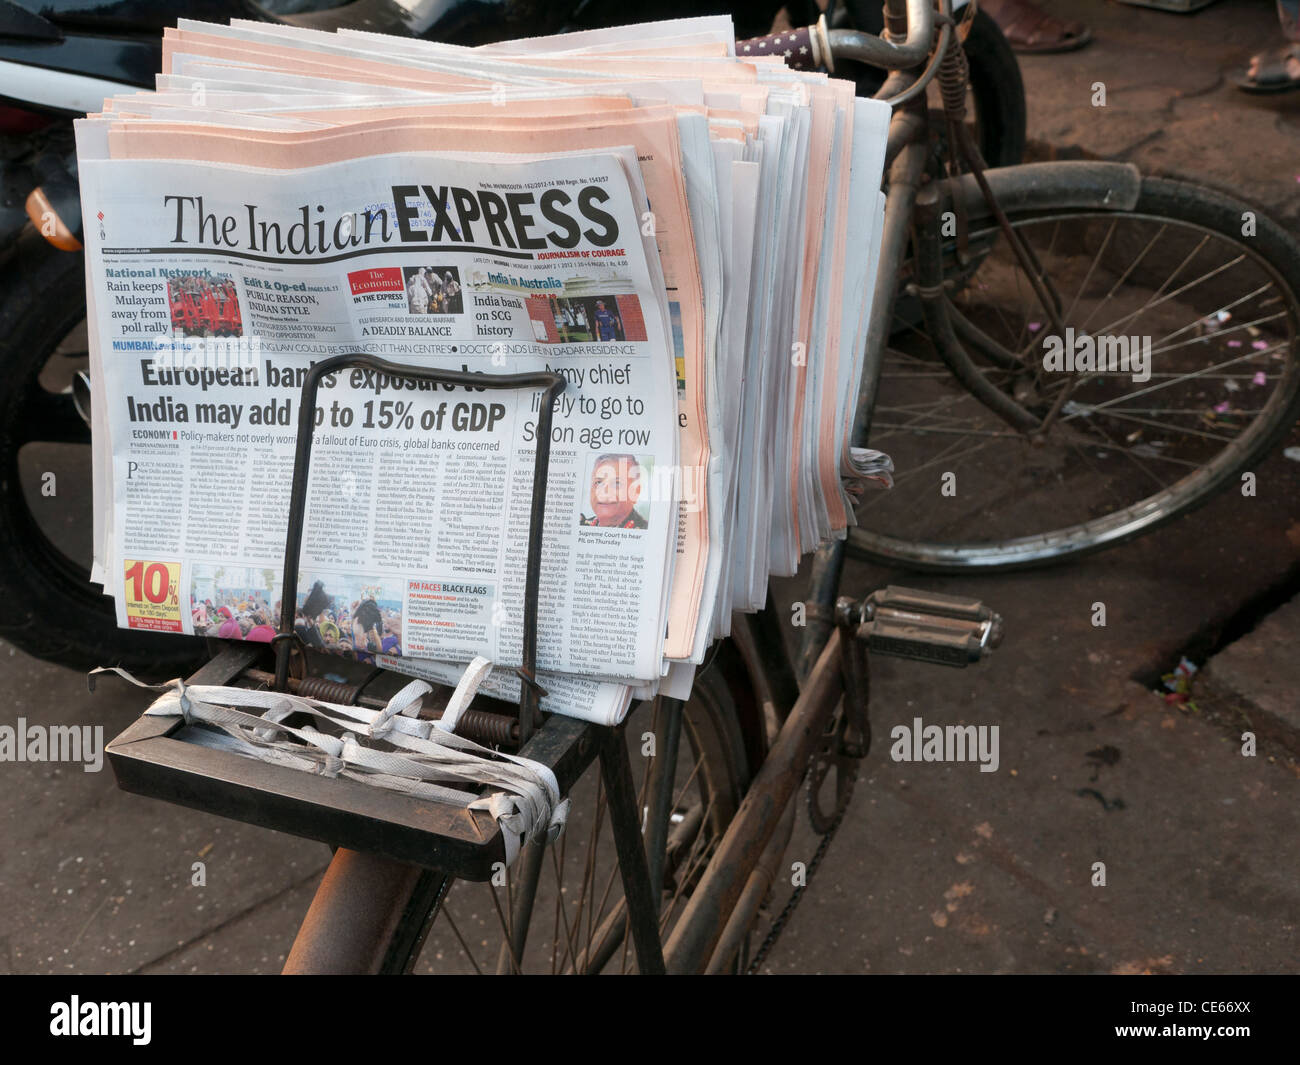 L'Indian Express Journal sur un vélo de livraison à Mumbai Inde Banque D'Images